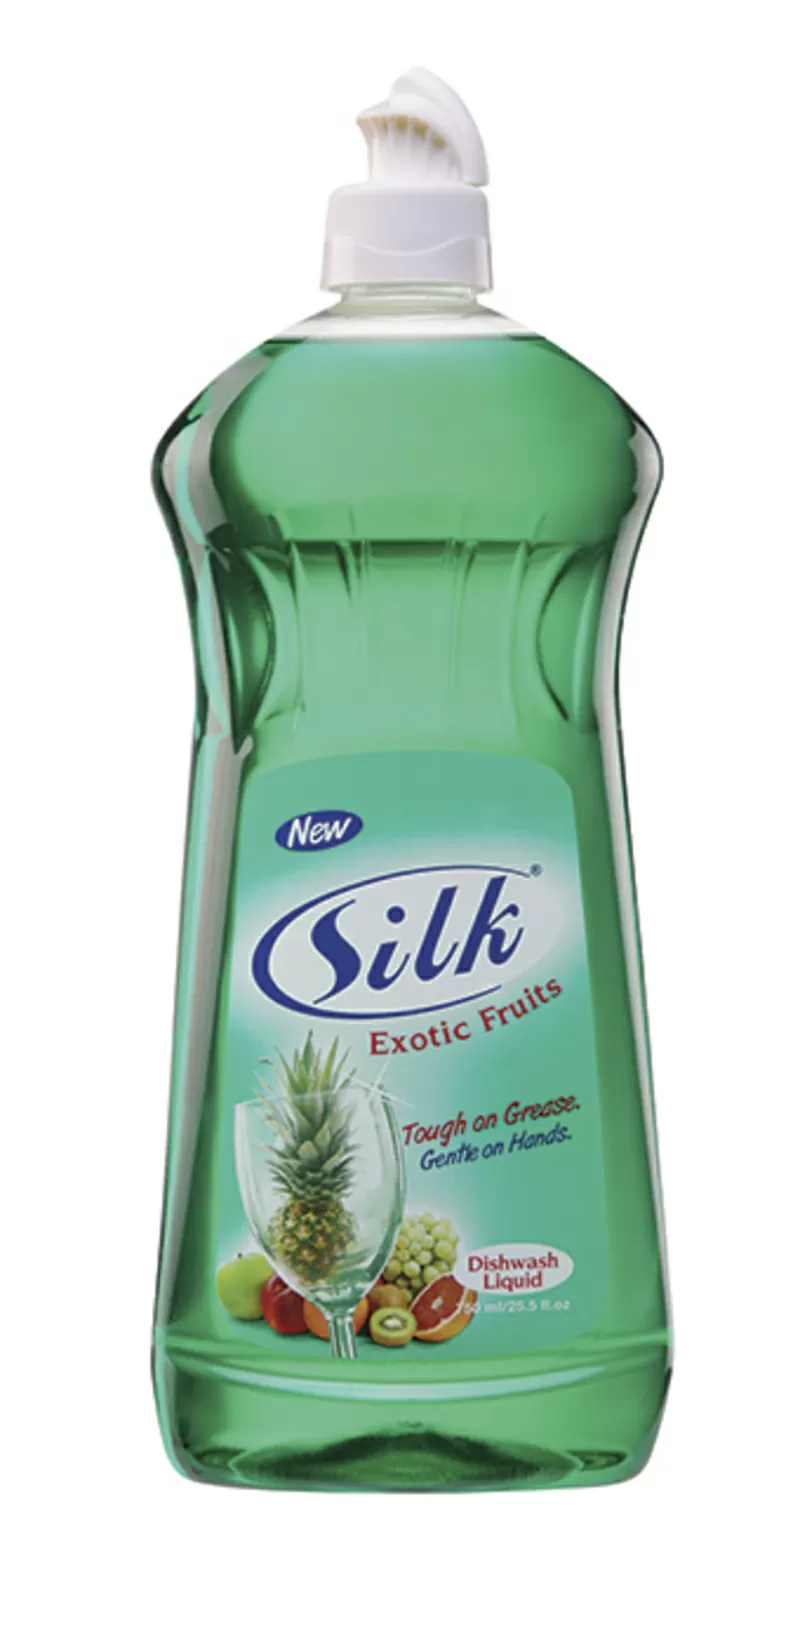 Жидкость для мытья посуды Silk 2